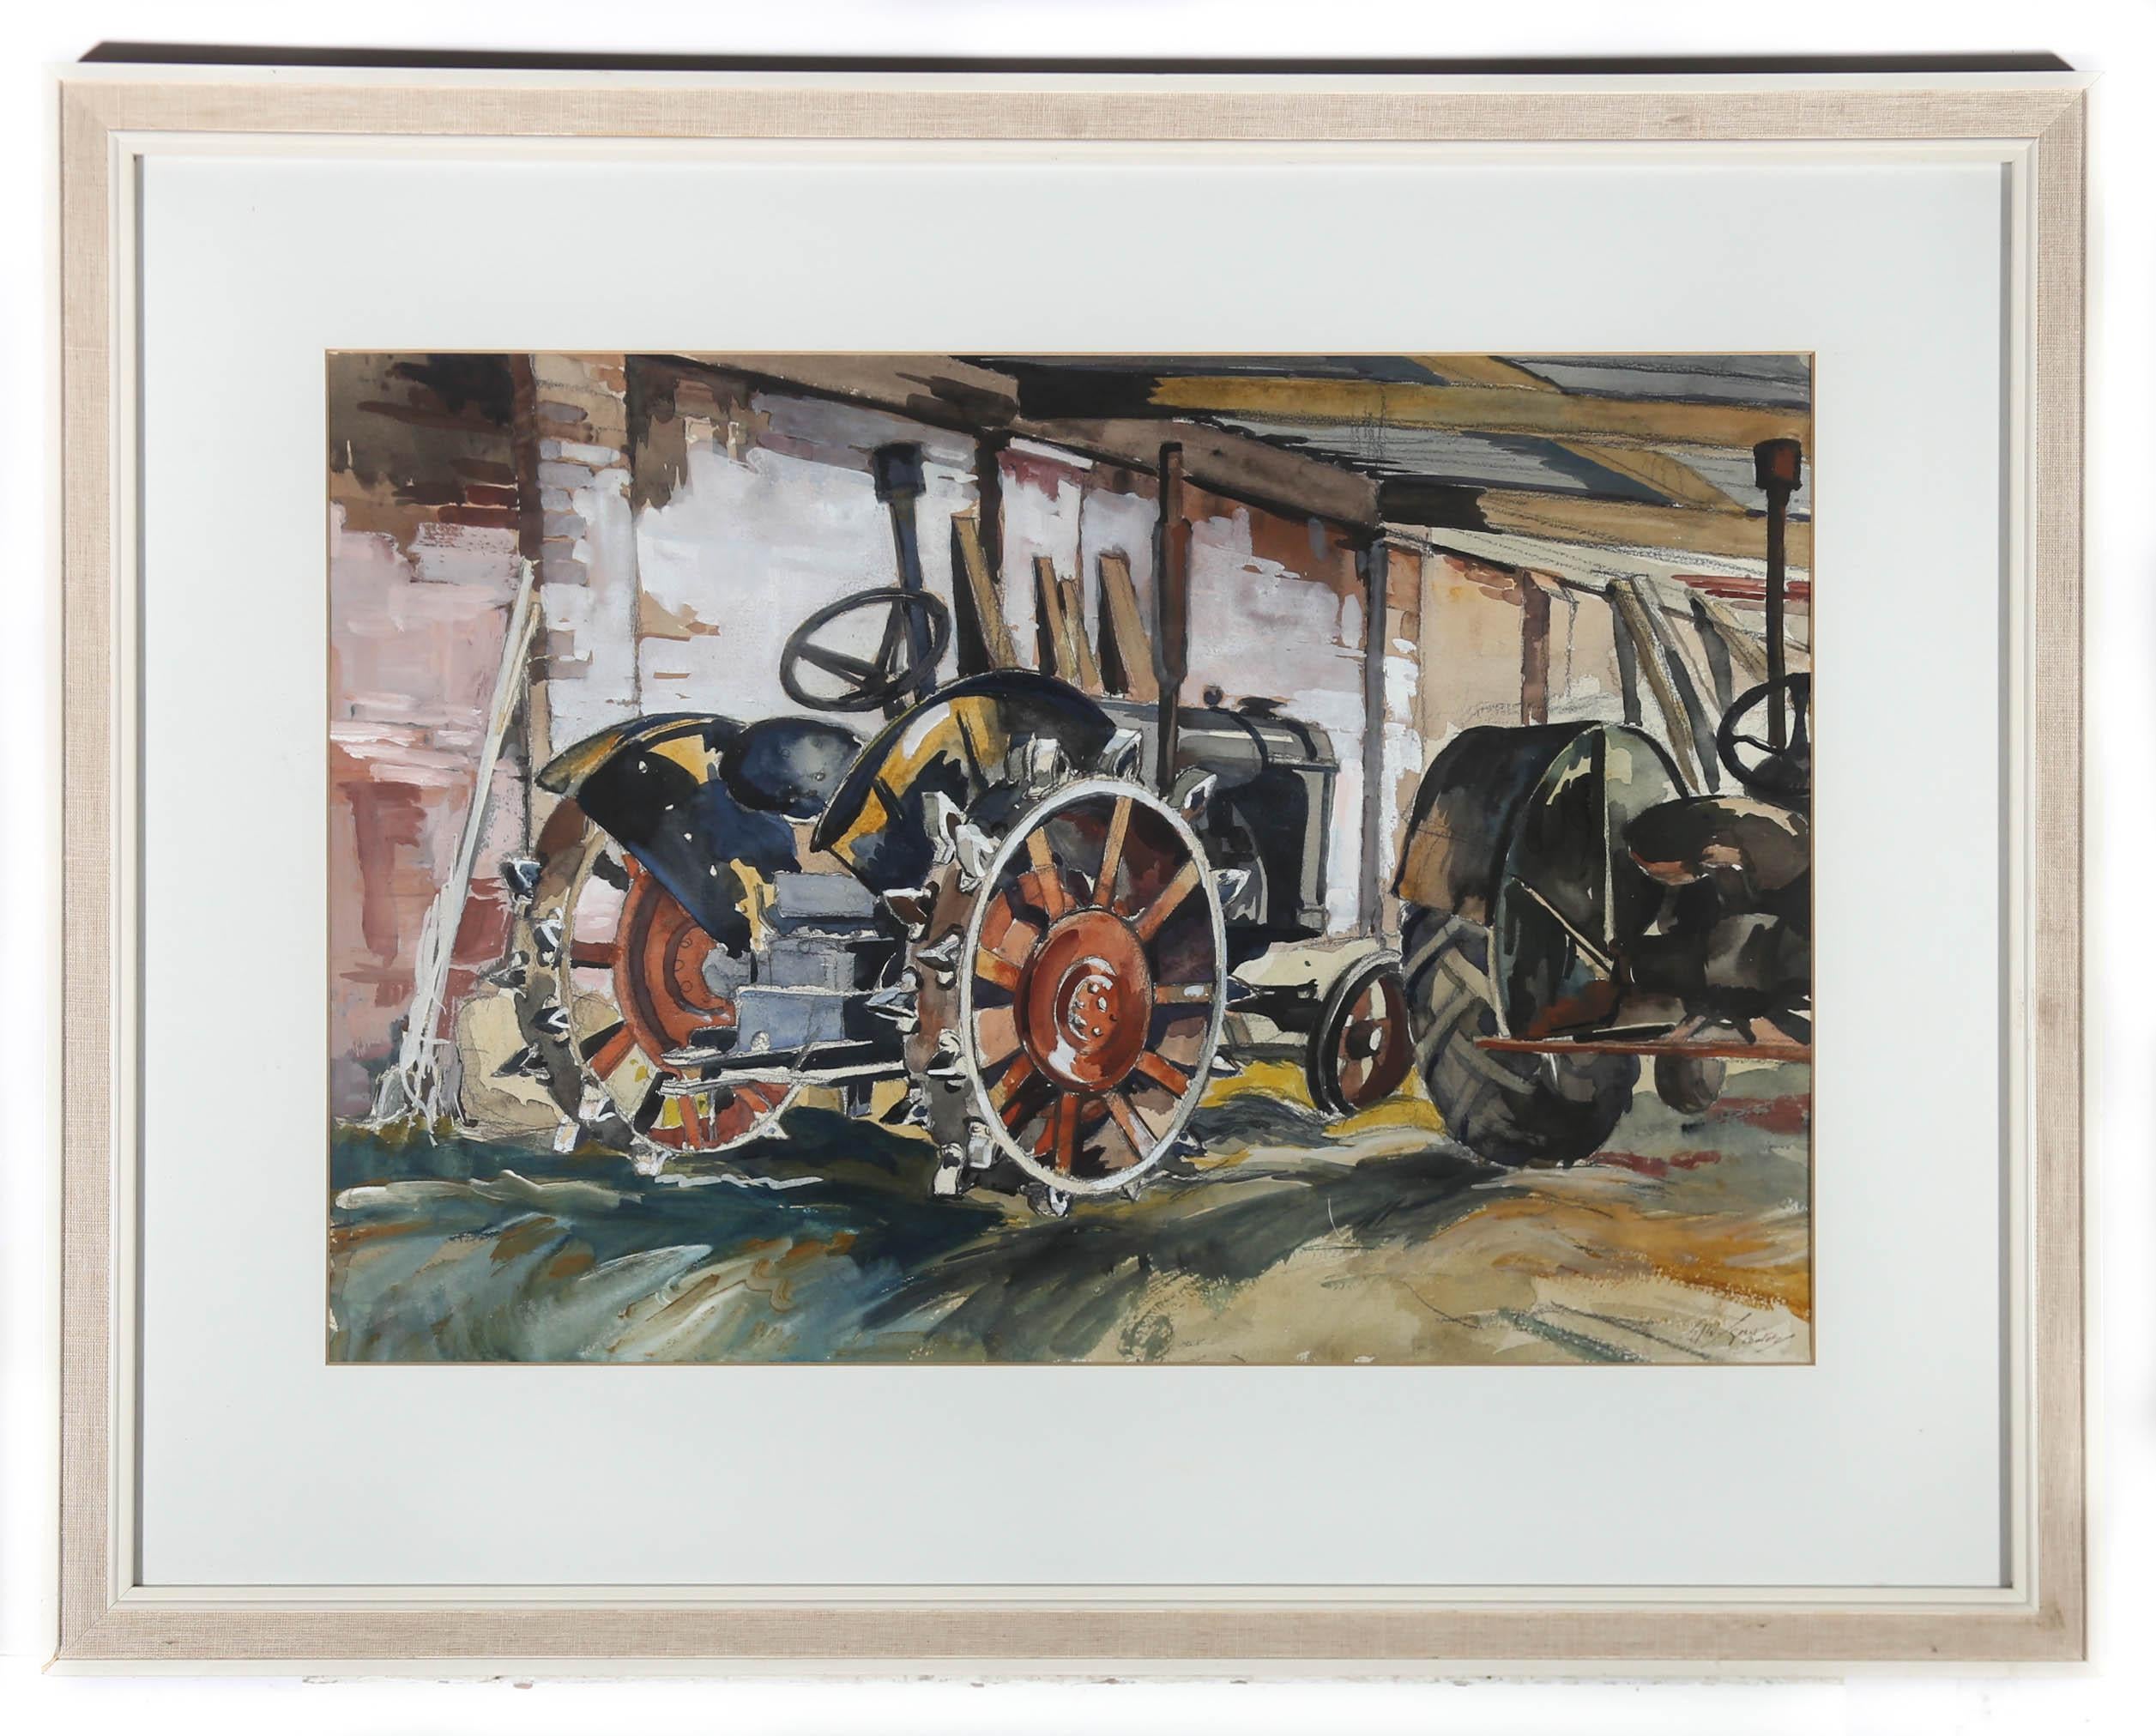 Cette charmante aquarelle montre un tracteur Coates d'époque protégé des intempéries dans le hangar d'un agriculteur. L'artiste a apposé ses initiales et sa signature en bas à droite. Le tableau est présenté dans un cadre blanc du 20e siècle avec